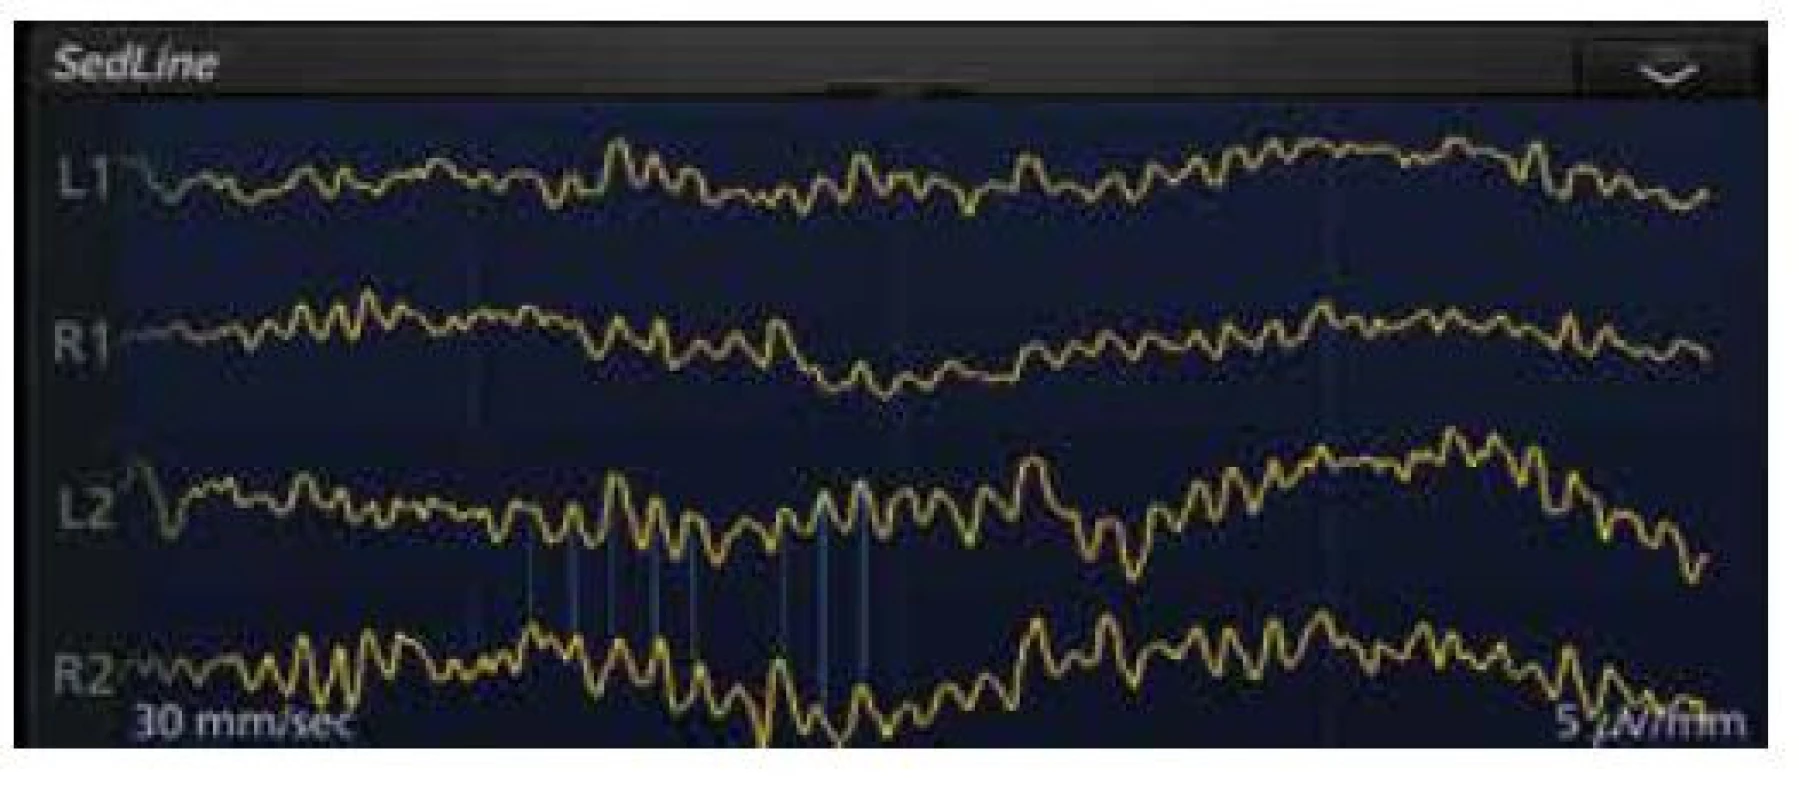 Na displeji monitoru SedLine je zdůrazněna koherence (korelace)
syrových EEG křivek snímaných z čela mezi L2 a R2 elektrodami u 69letého
pacienta s chronickou renální insuficiencí v celkové anestezii propofolem,
sevofluranem a sufentanilem k založení hemodialyzačního zkratu, Patient
State Index aktuálně 31 (doporučené rozmezí 25–50)